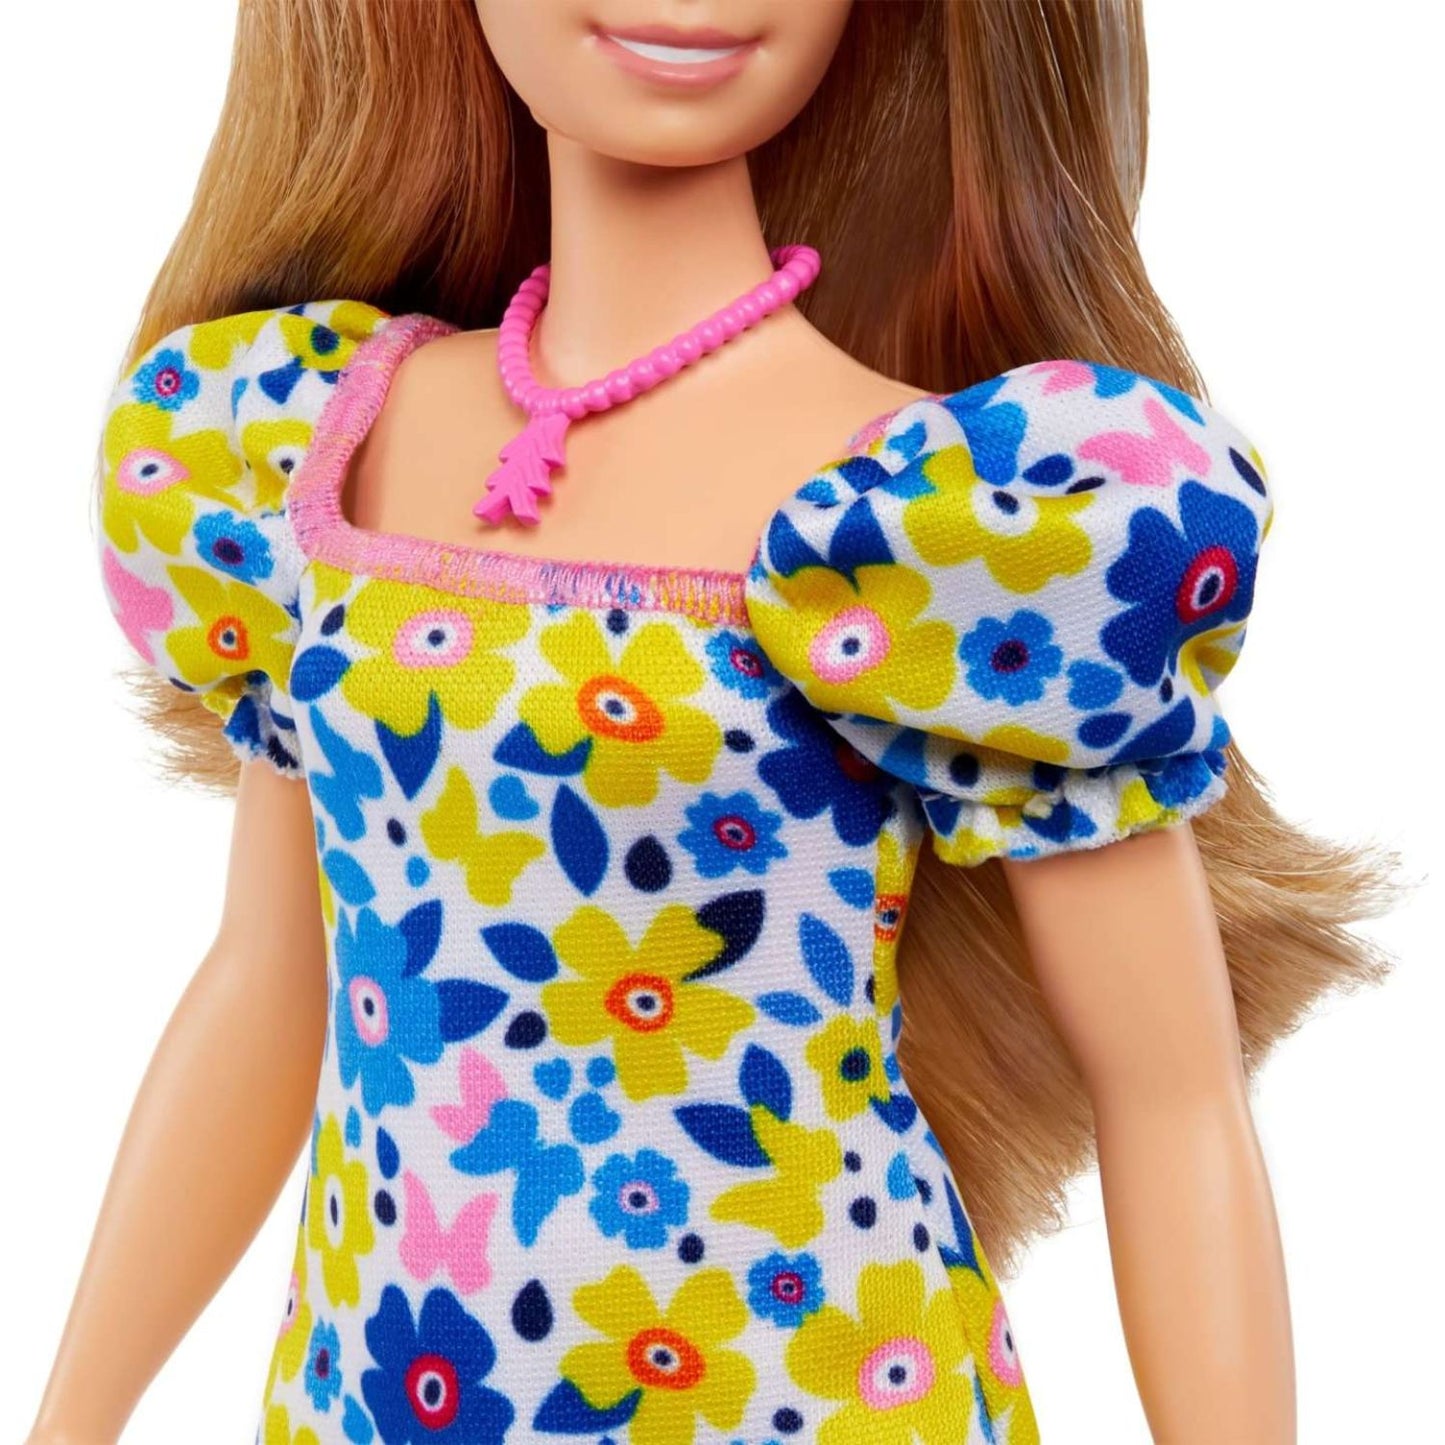 Mattel - Barbie Fashionistas con sindrome di Down HJT05